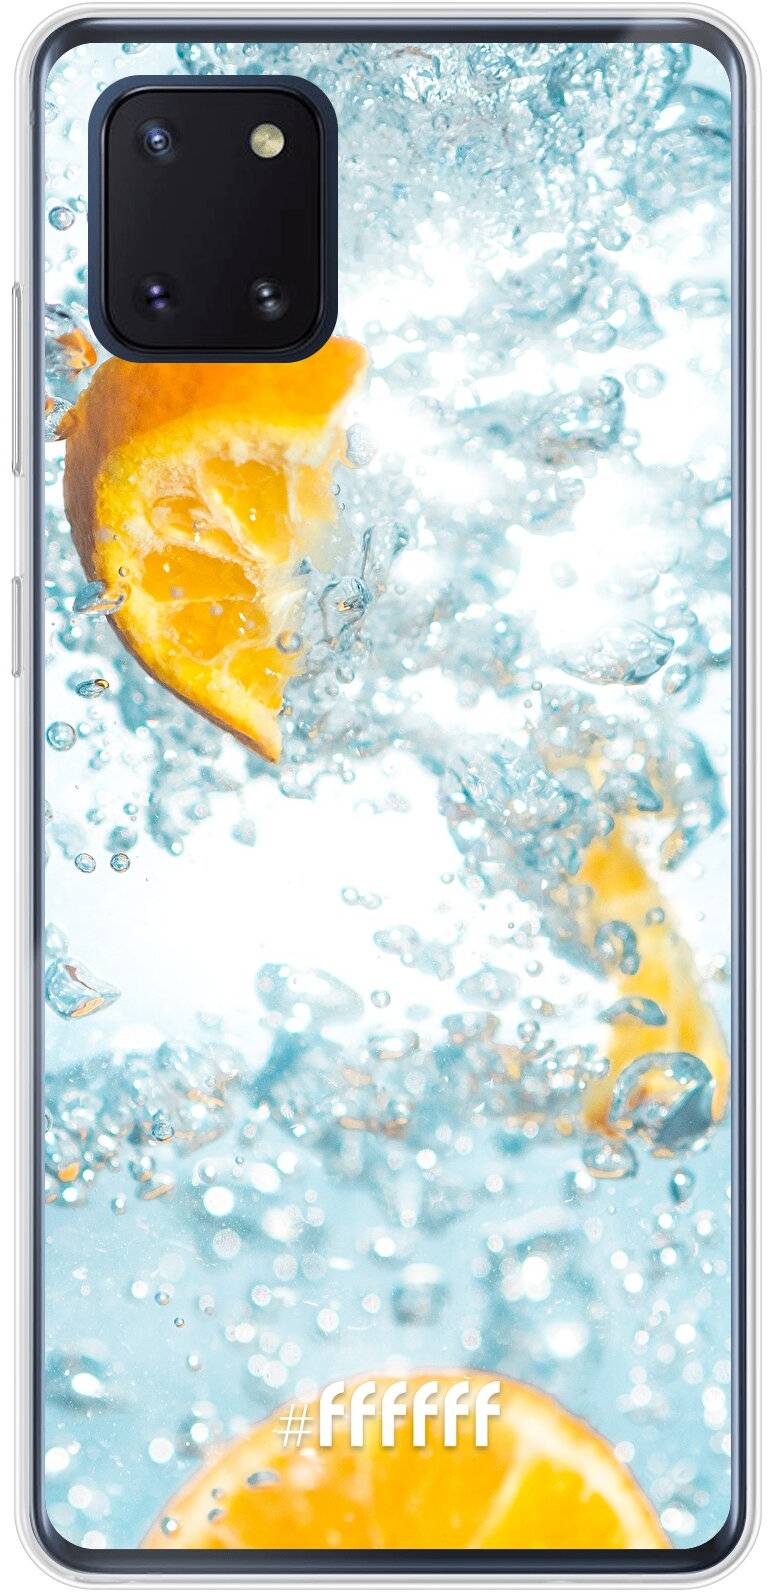 Lemon Fresh Galaxy Note 10 Lite